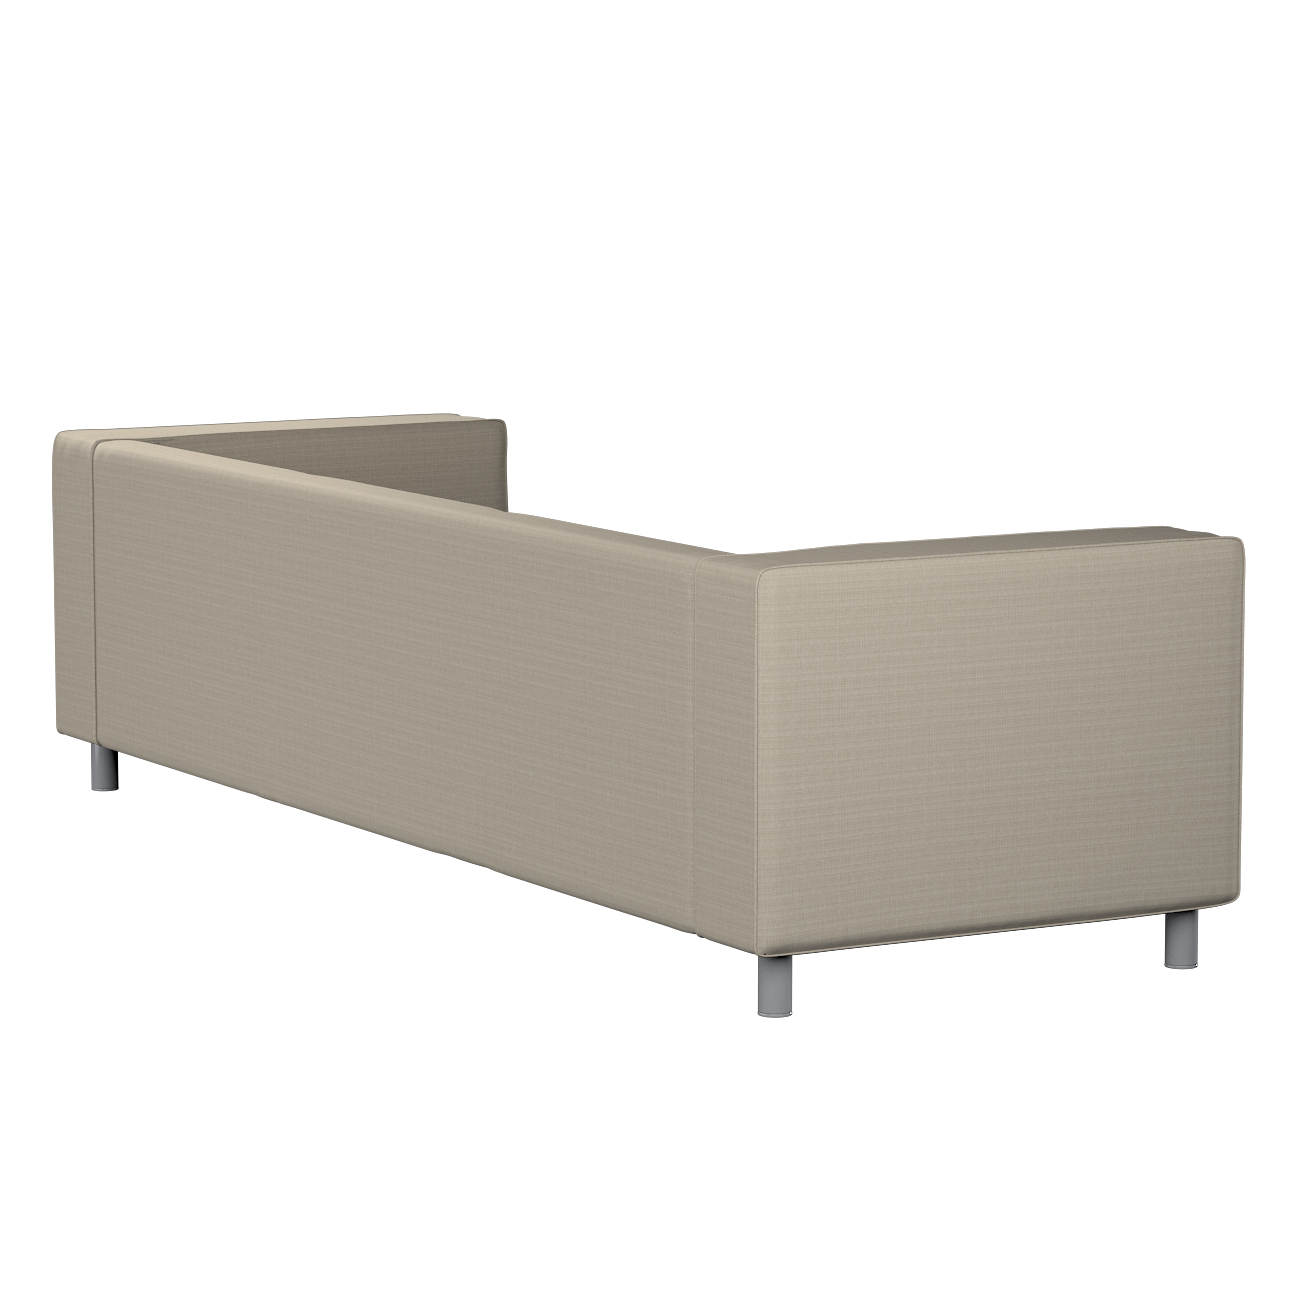 Bezug für Klippan 4-Sitzer Sofa, beige, Bezug für Klippan 4-Sitzer, Living günstig online kaufen